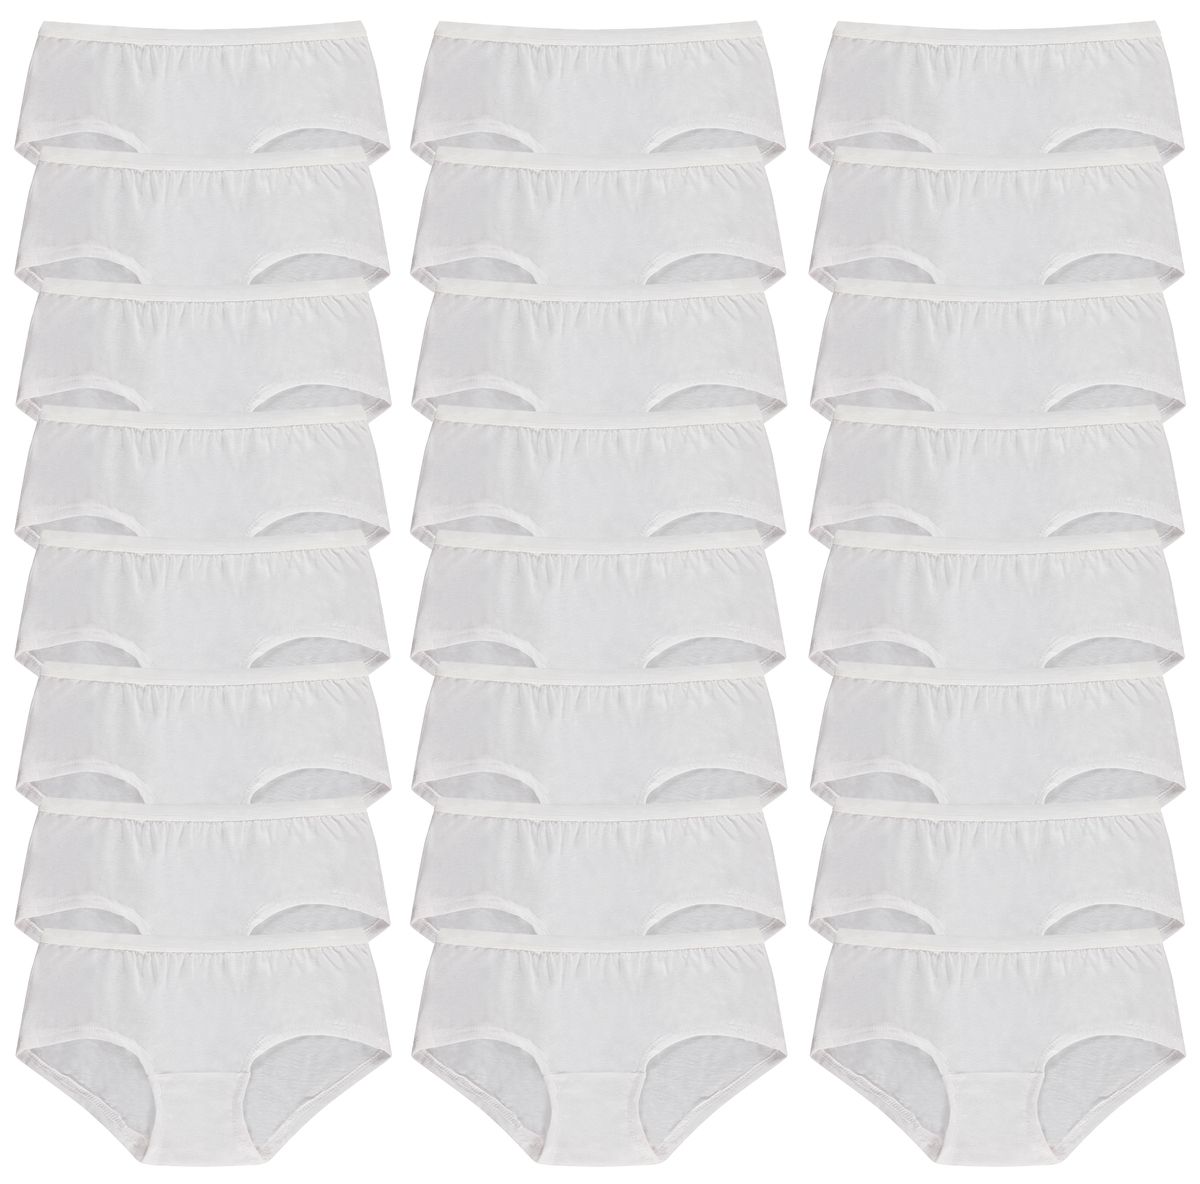 9 Pack of Womens Cotton Underwear Panty Briefs in Bulk, 95% Cotton